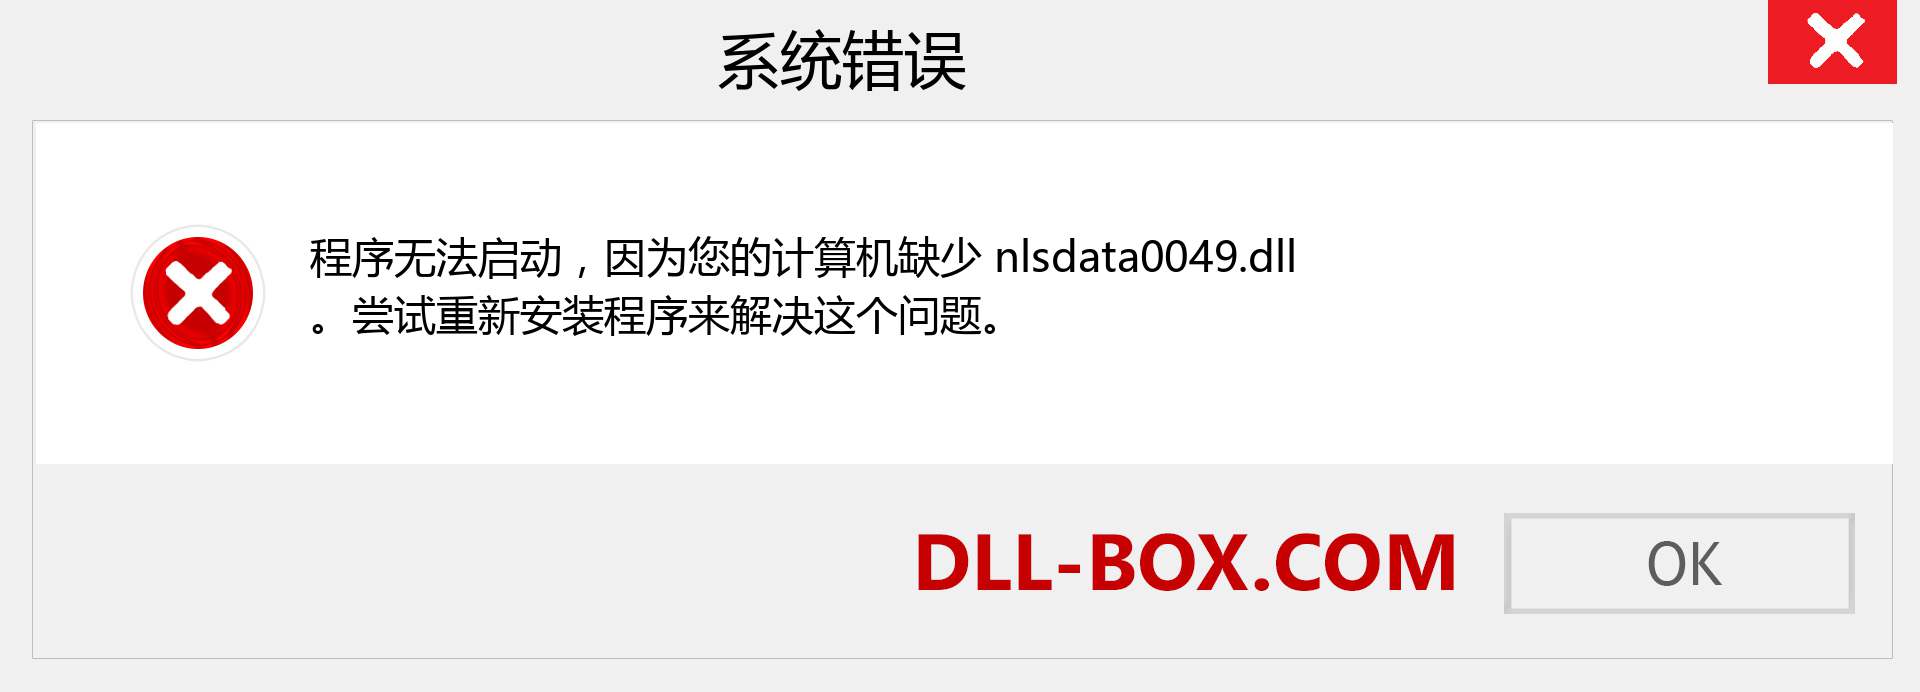 nlsdata0049.dll 文件丢失？。 适用于 Windows 7、8、10 的下载 - 修复 Windows、照片、图像上的 nlsdata0049 dll 丢失错误